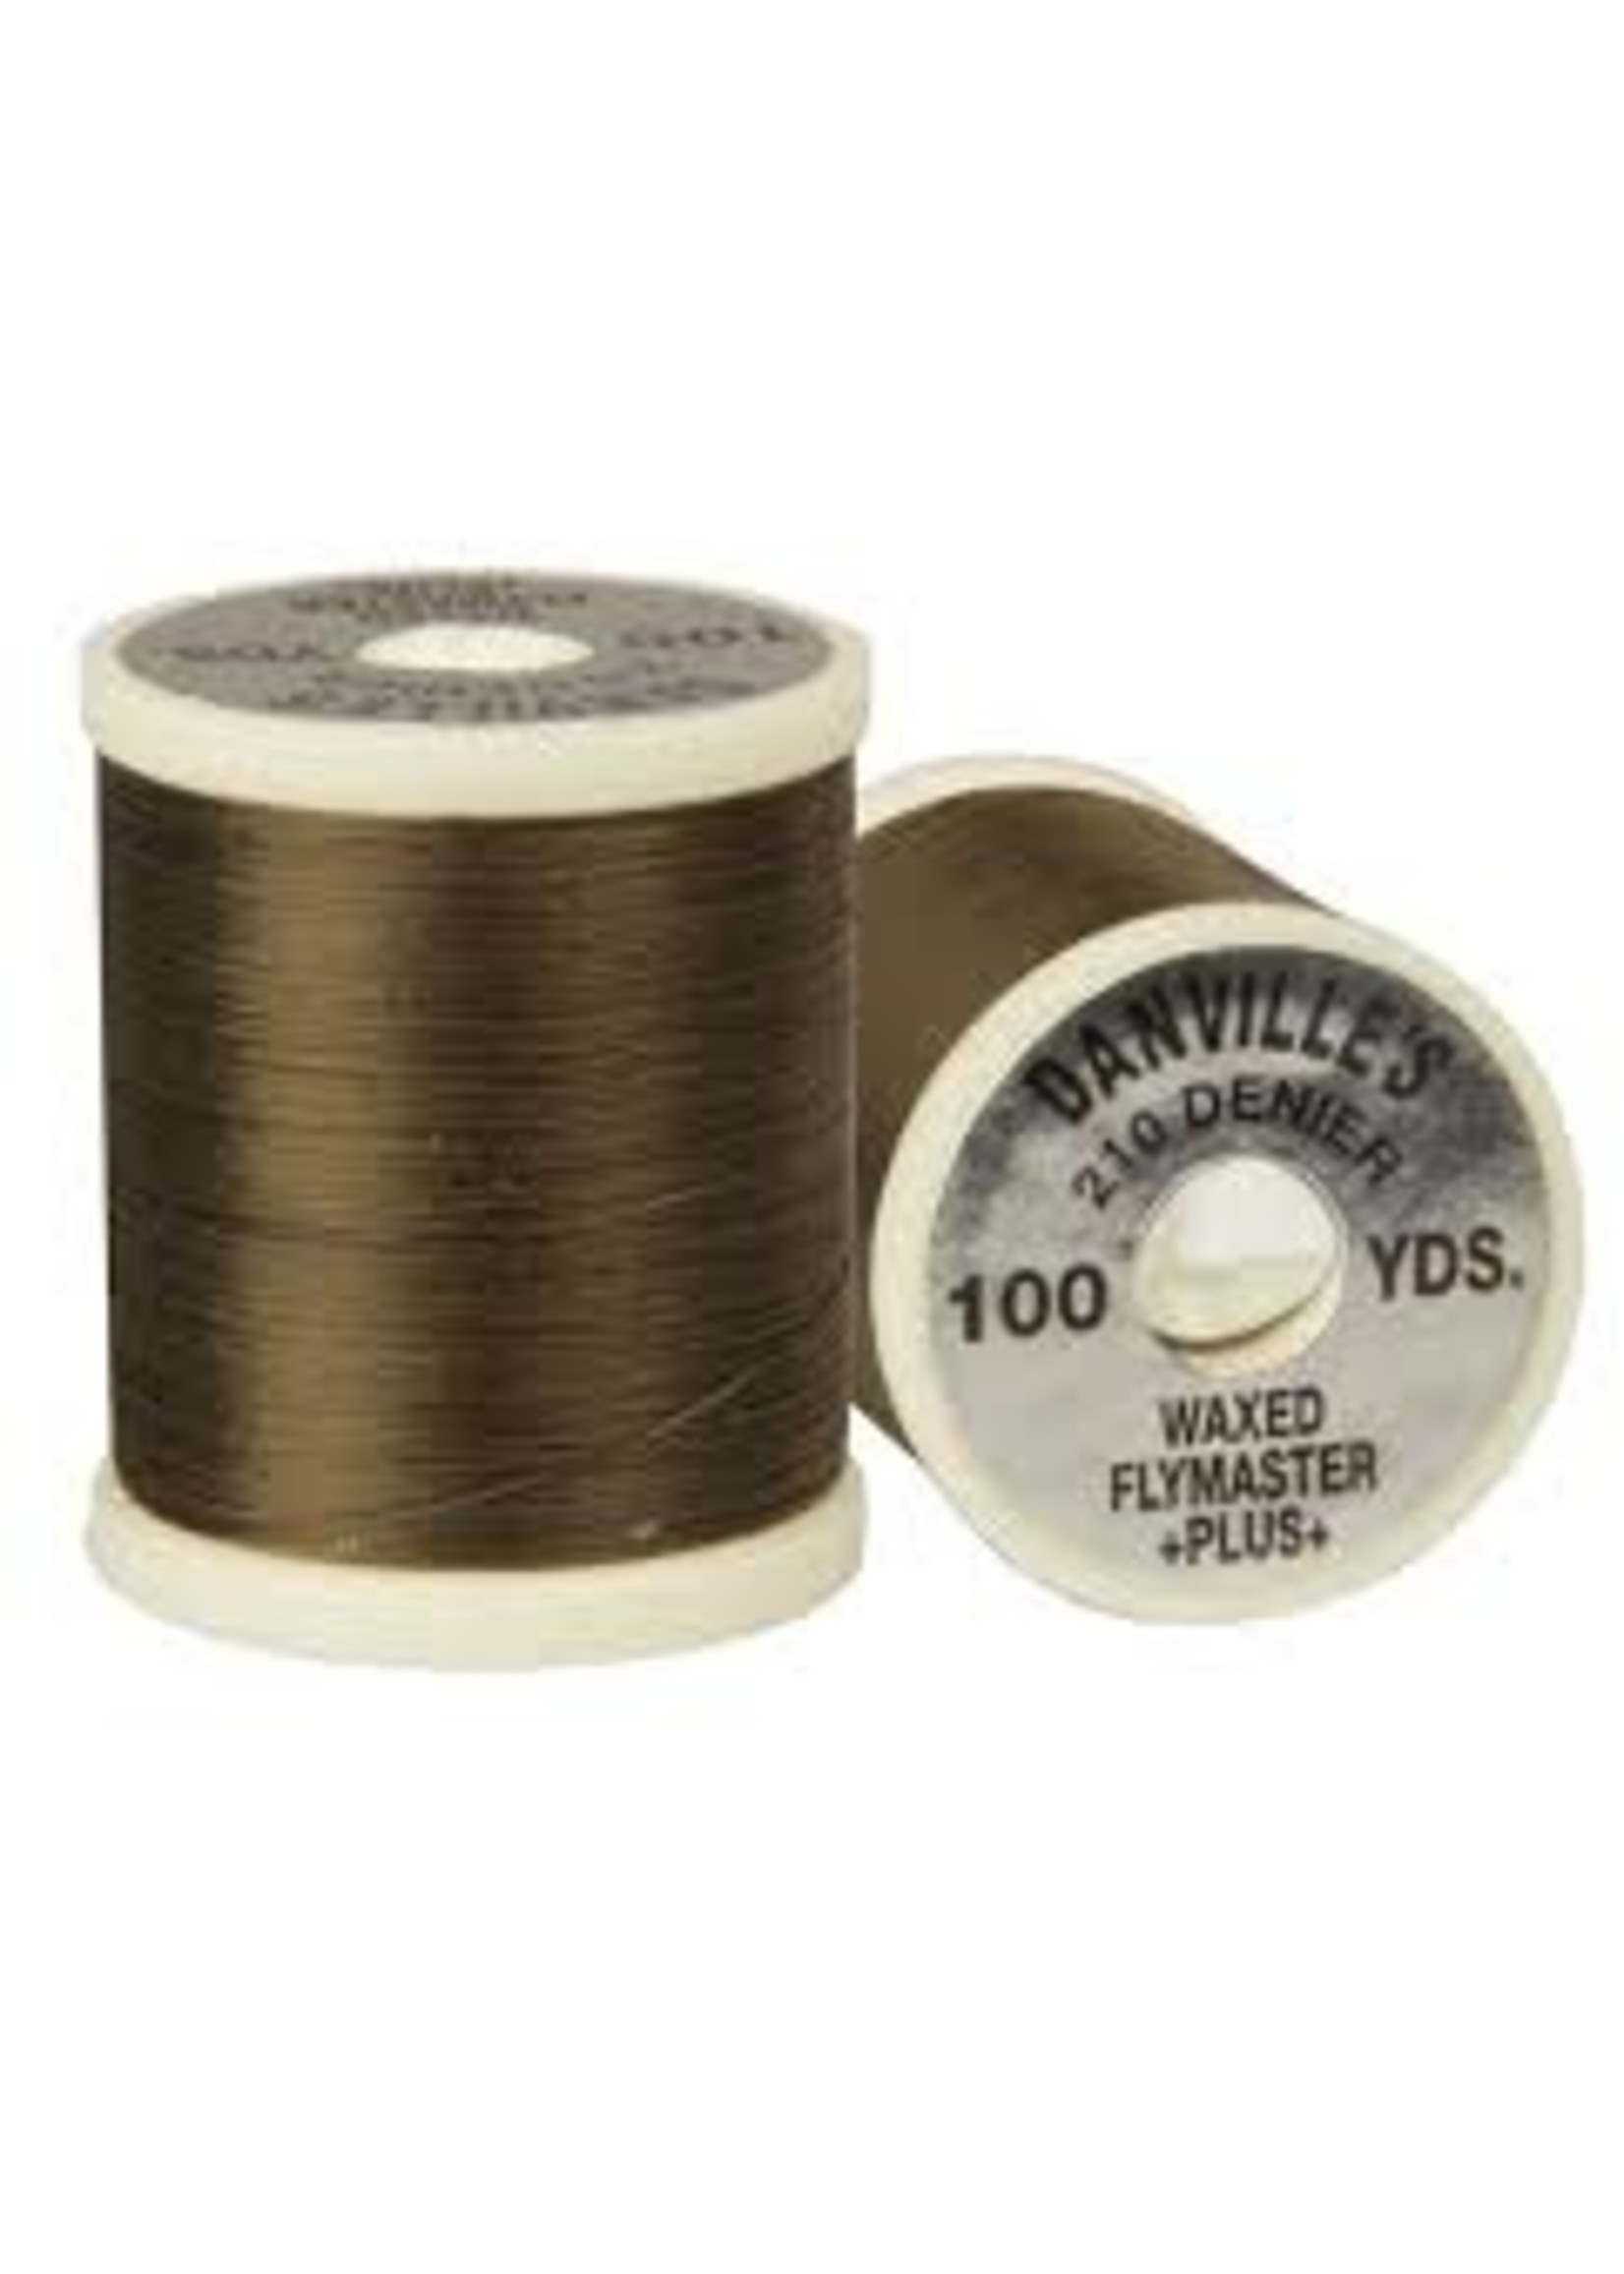 Danville Thread Flat Waxed Nylon